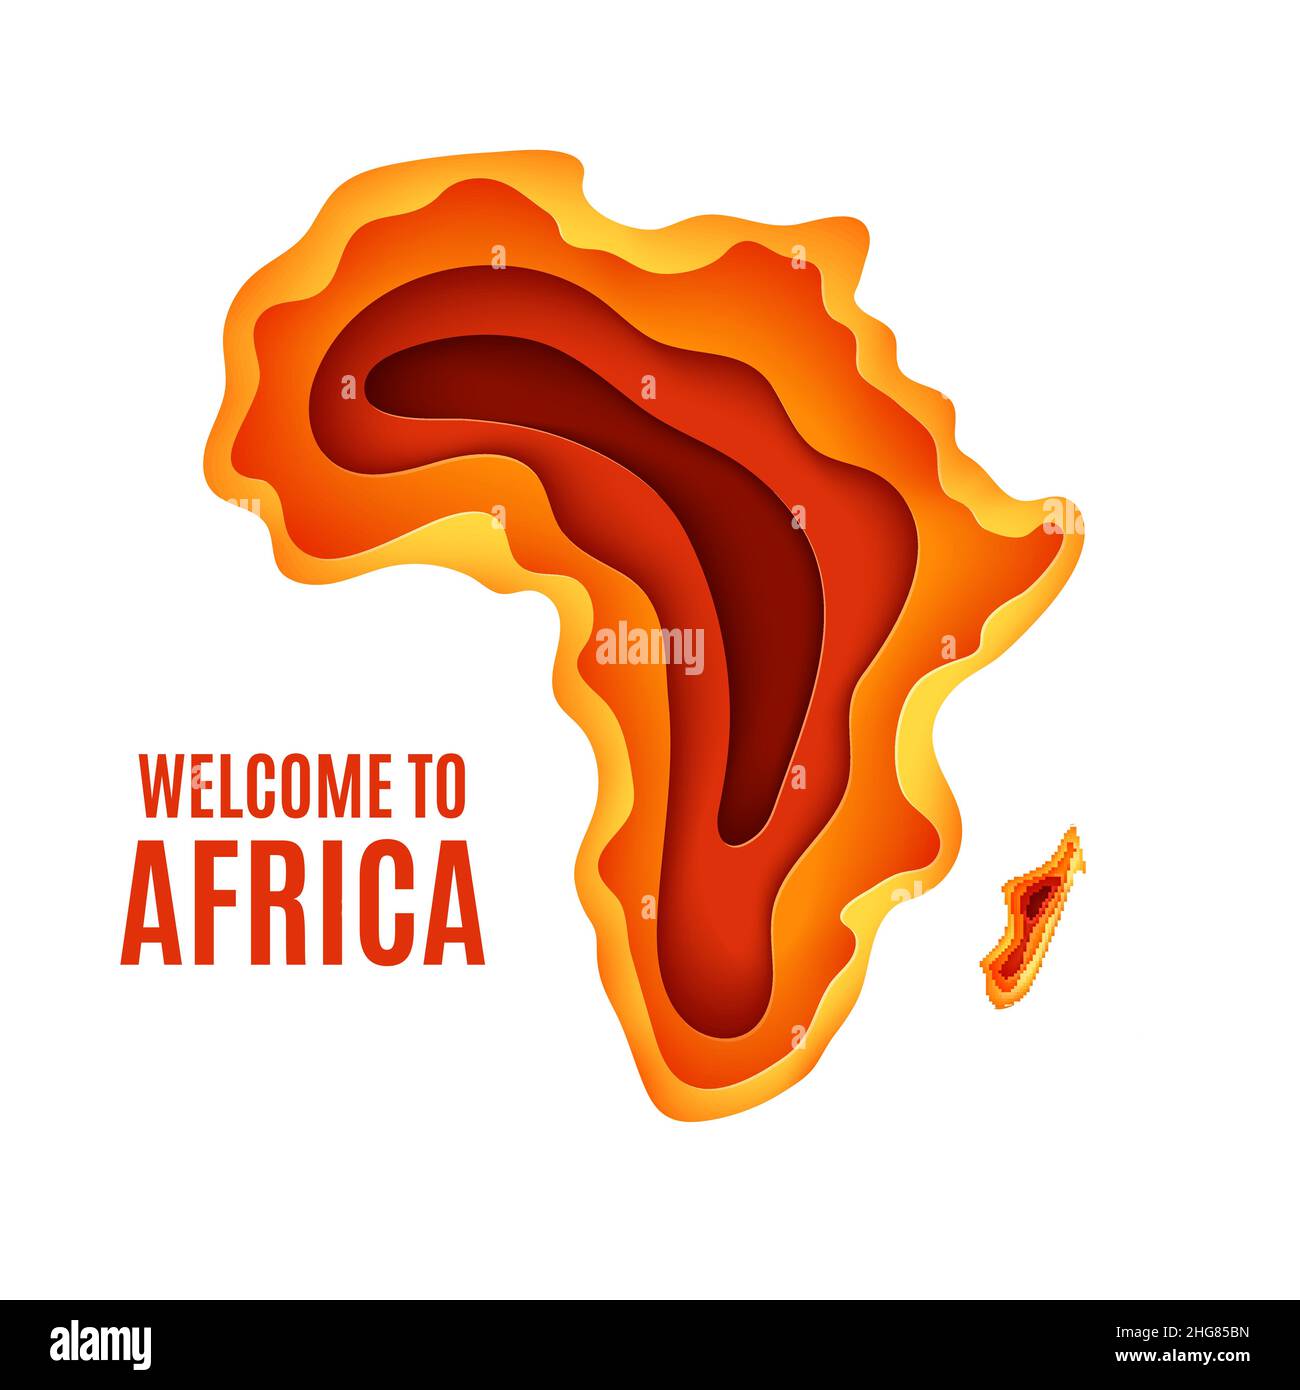 Bienvenue à l'affiche Afrique.Paysage africain en papier coupé.Silhouette superposée de carte de l'Afrique et de Madagascar en orange.Journée Vector Africa Illustration de Vecteur